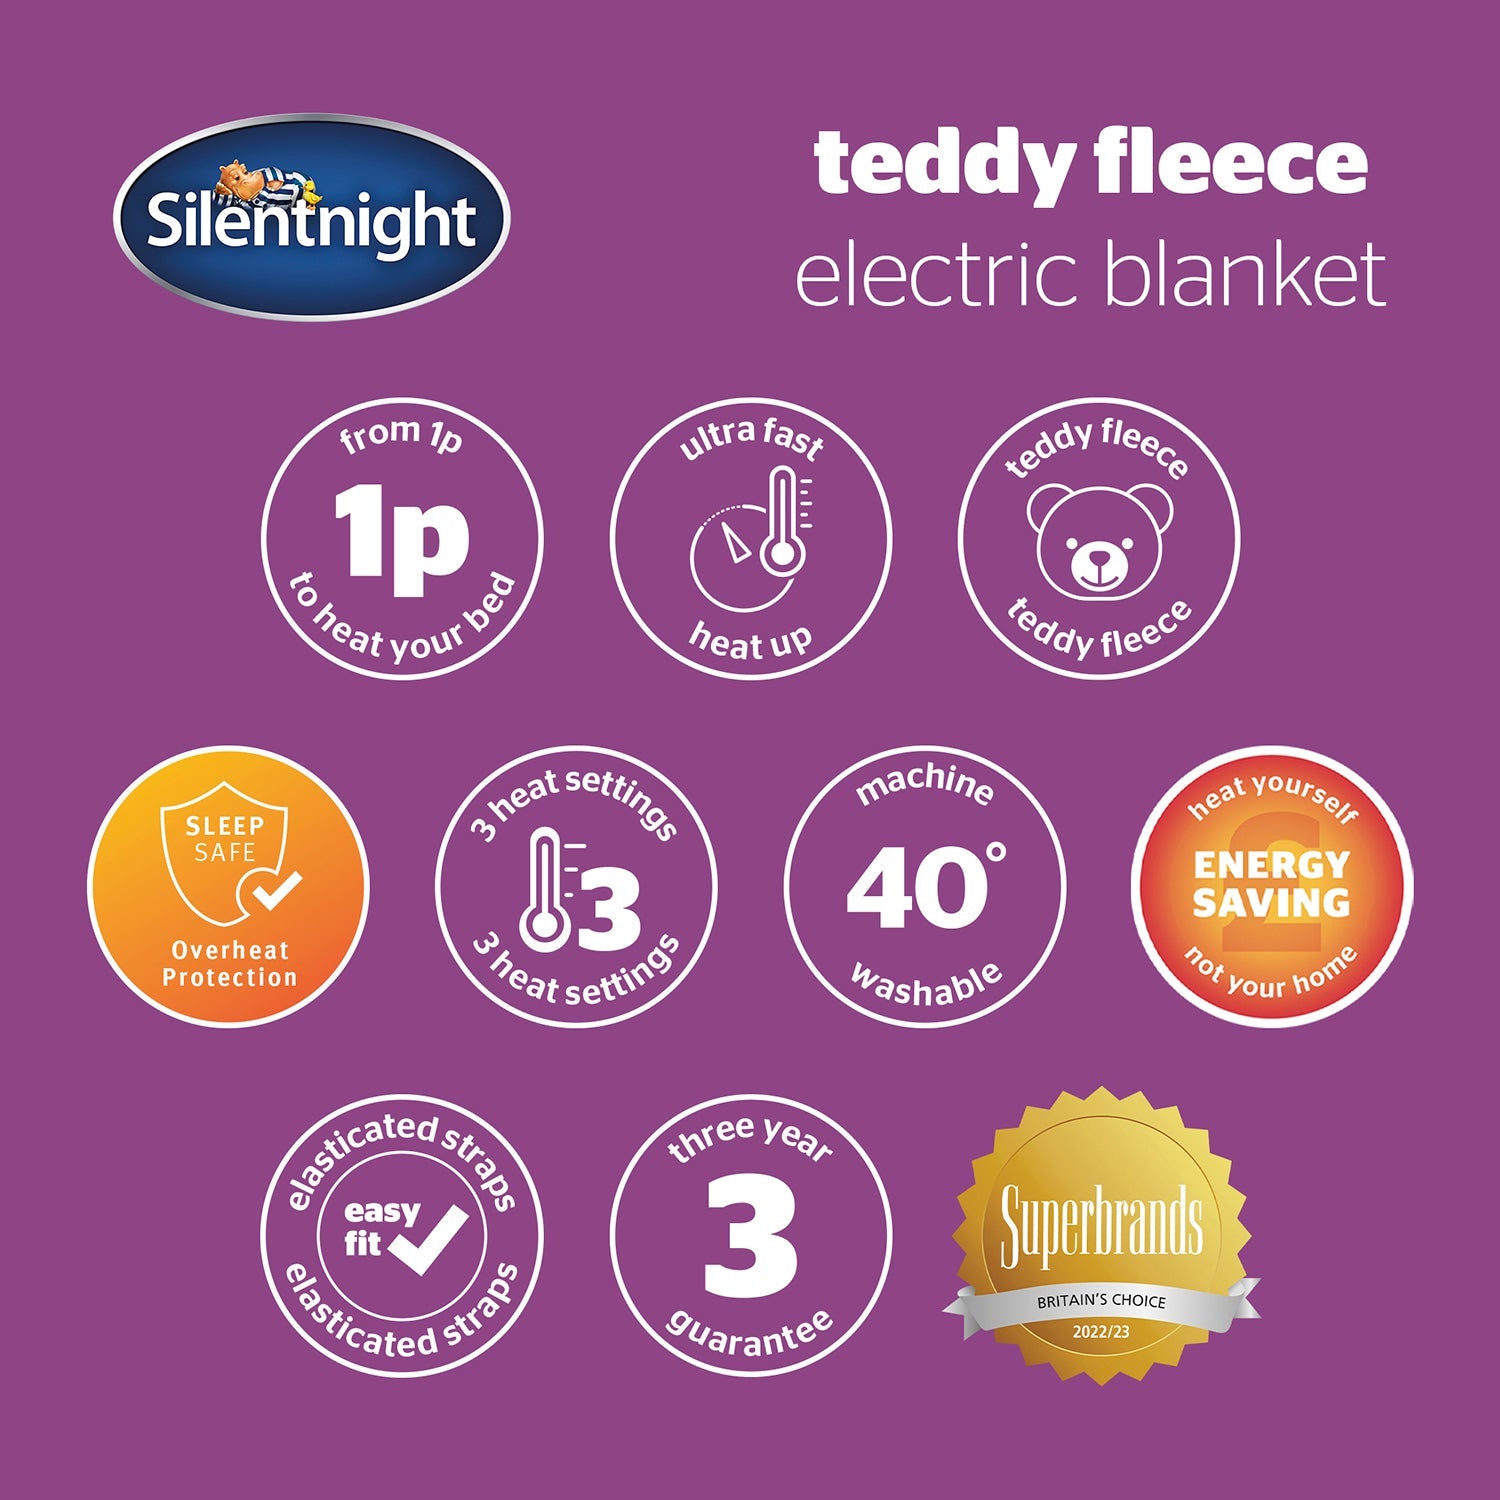 Comfort Control Fleece Electric Blanket, Silentnight